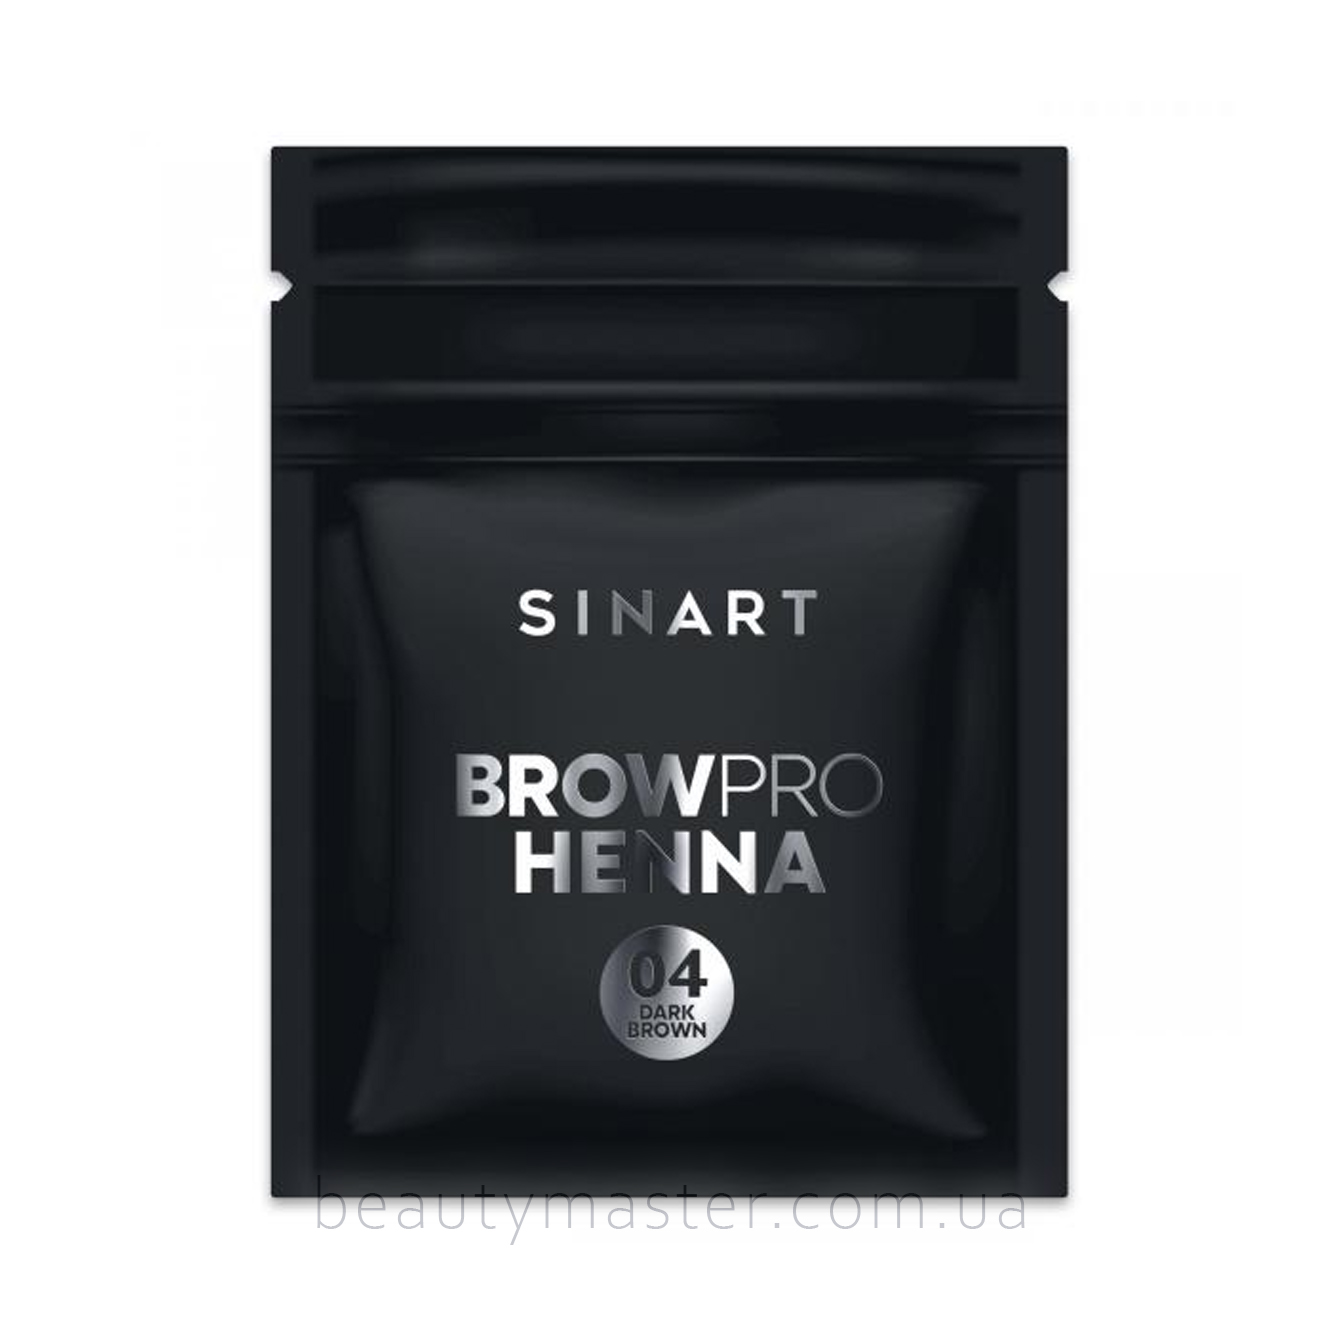 Sinart Хна для брів Browpro henna 04 dark brown sachet 1.5g